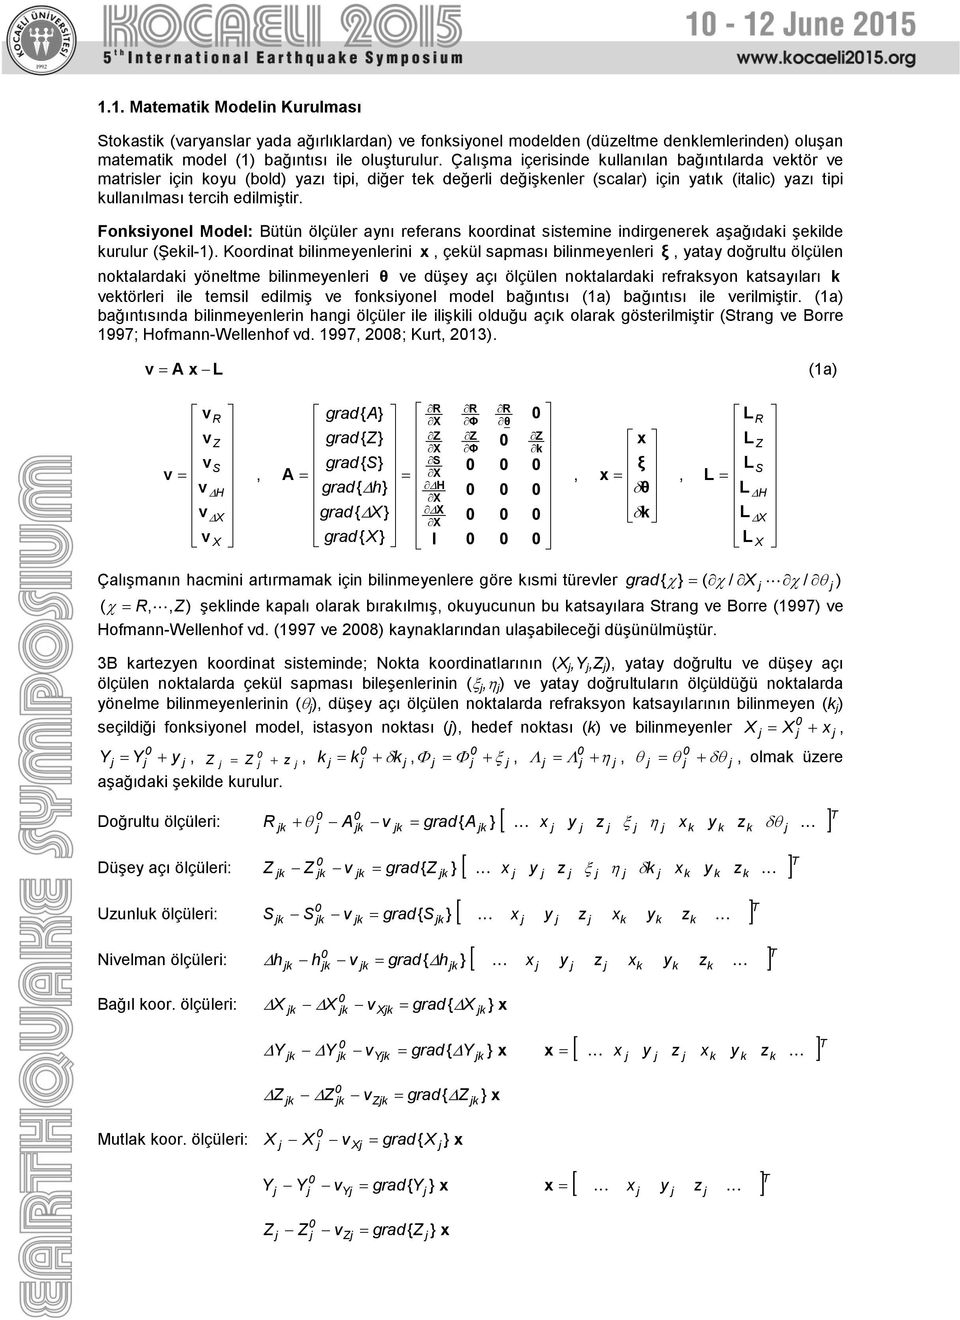 Fonsiyonel Model: Bütün ölçüler aynı referans oordinat sistemine indirgenere aşağıdai şeilde urulur (Şeil-1).